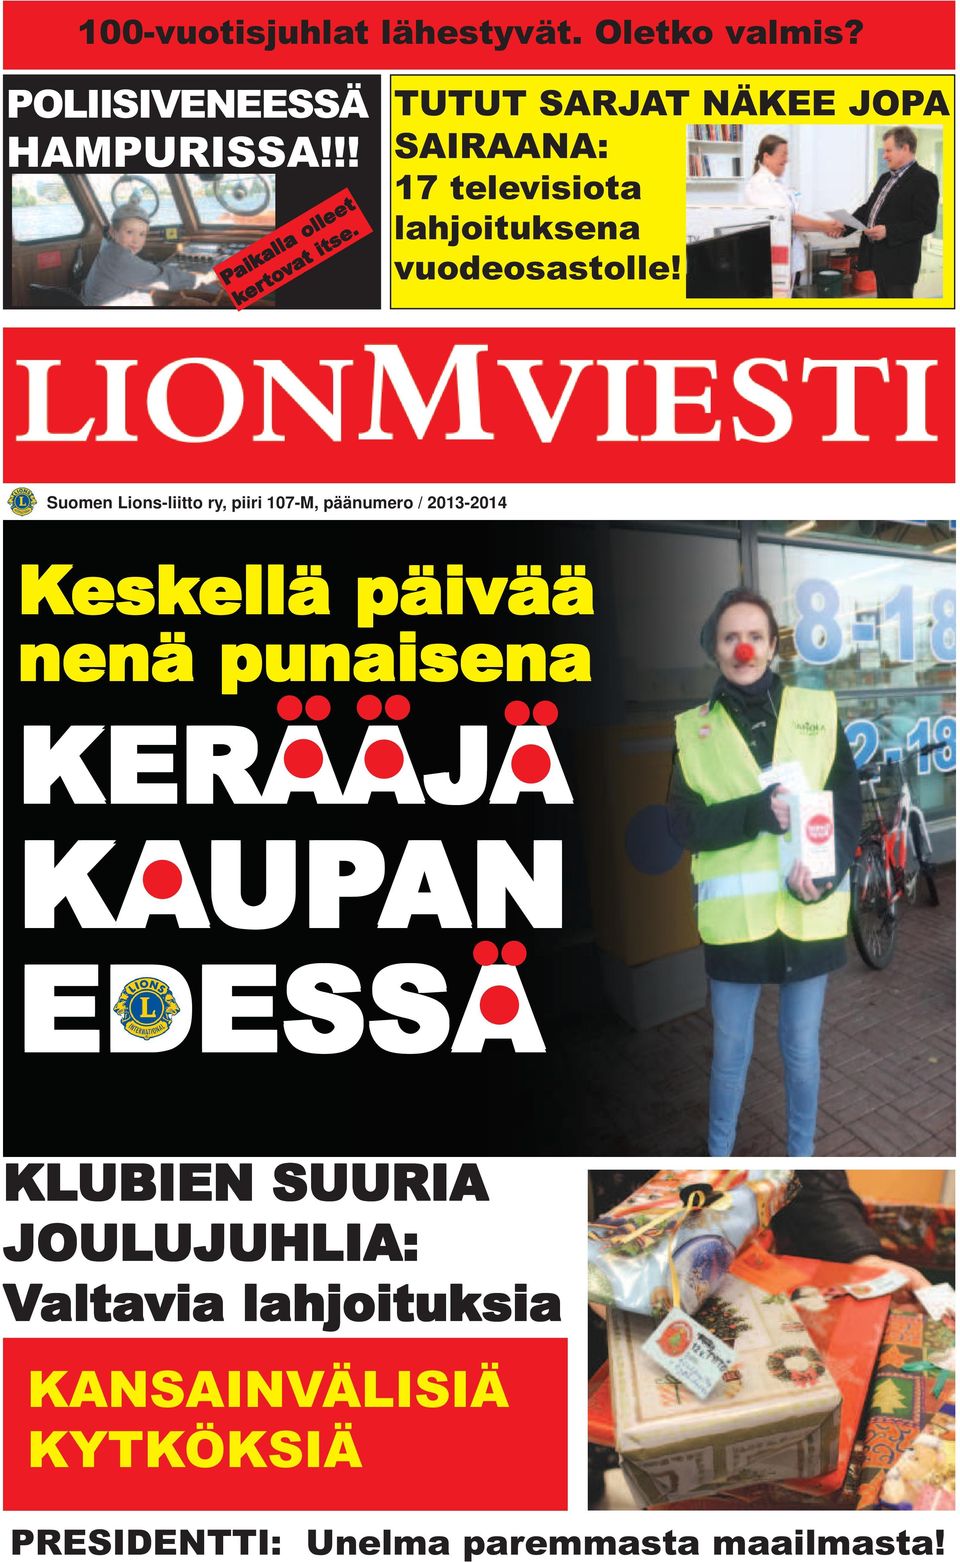 Suomen Lions-liitto ry, piiri 107-M, päänumero / 2013-2014 Kesk eskellä ellä päivää ää nenä punaisena KERAAJA